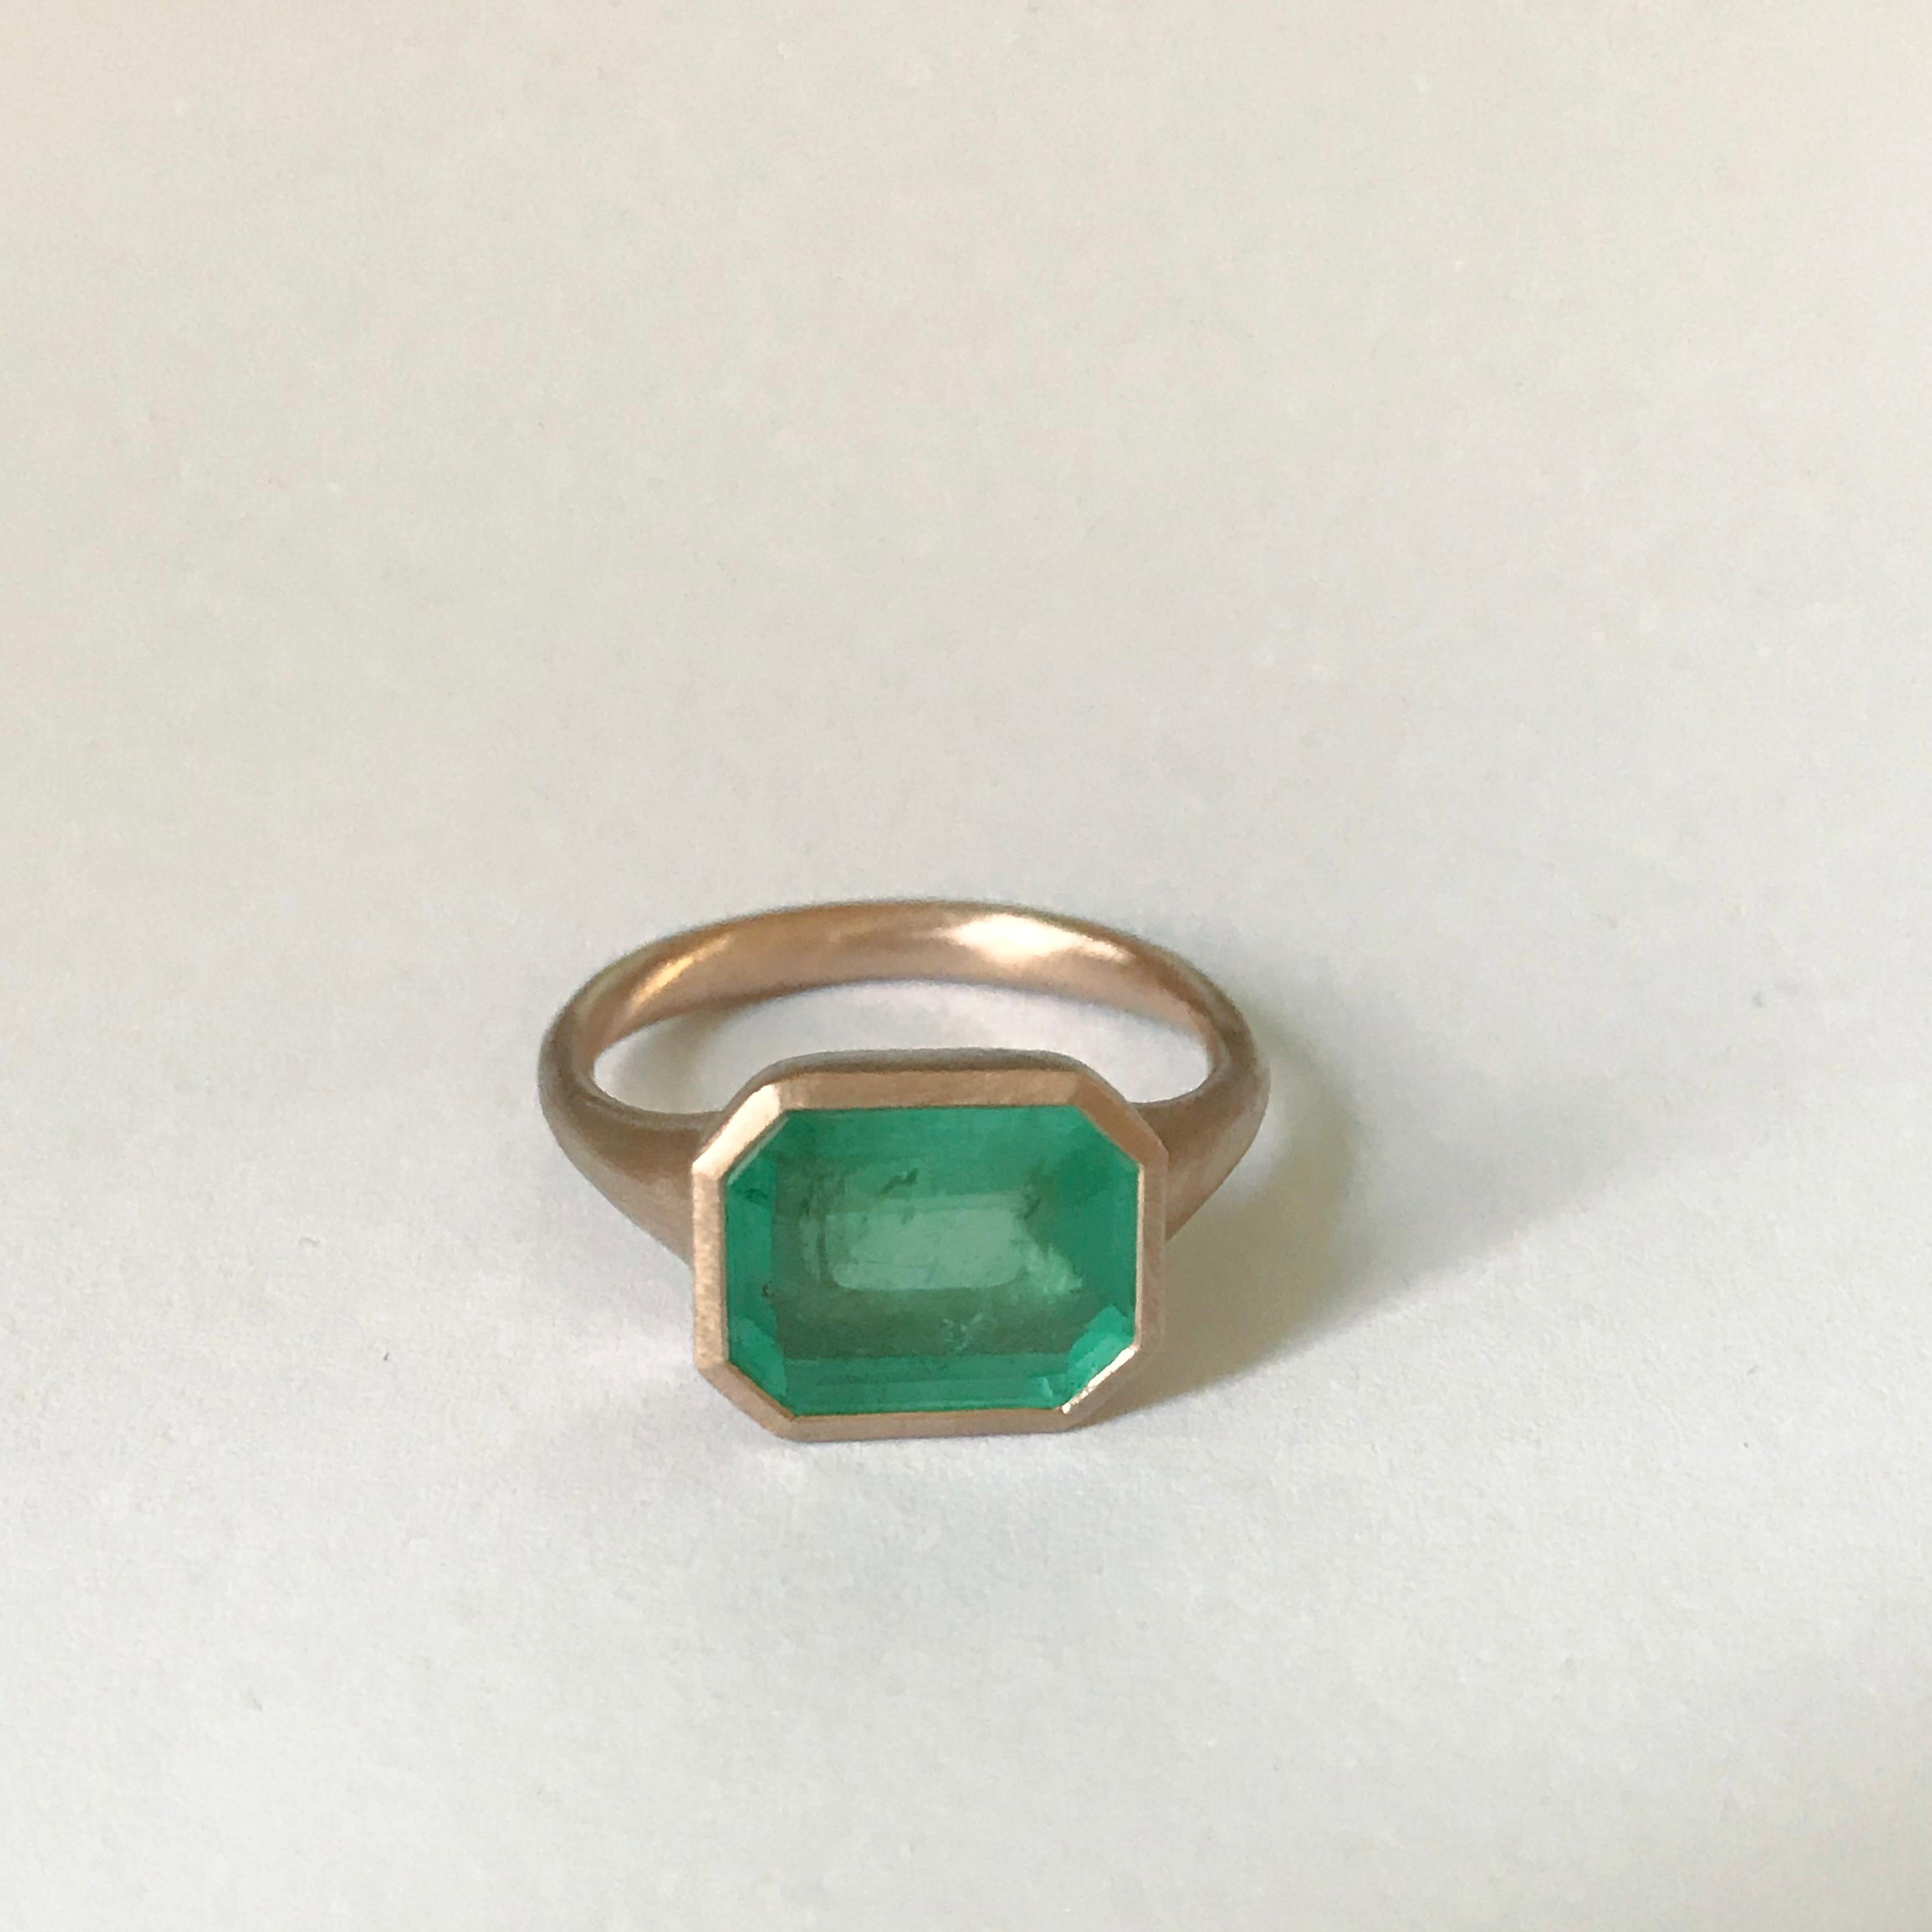 Dalben 4, 10 Carat Emerald Rose Gold Ring 3